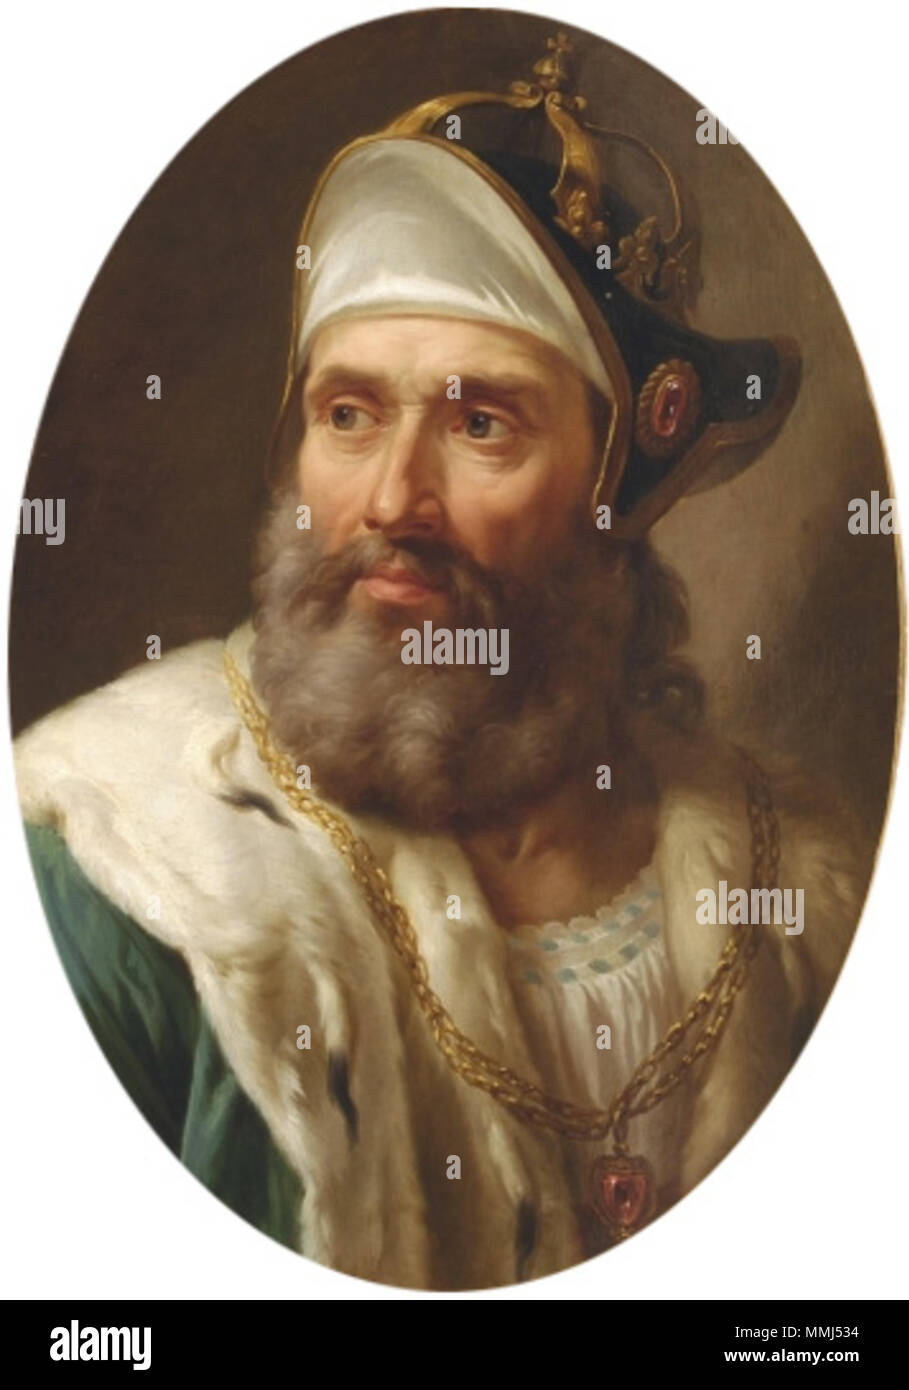 Inglese: Ritratto di Venceslao II di Boemia. Polski: Portret Wac?l'AWA II czeskiego. Tra il 1768 e il 1771. Bacciarelli - Vaclav Foto Stock